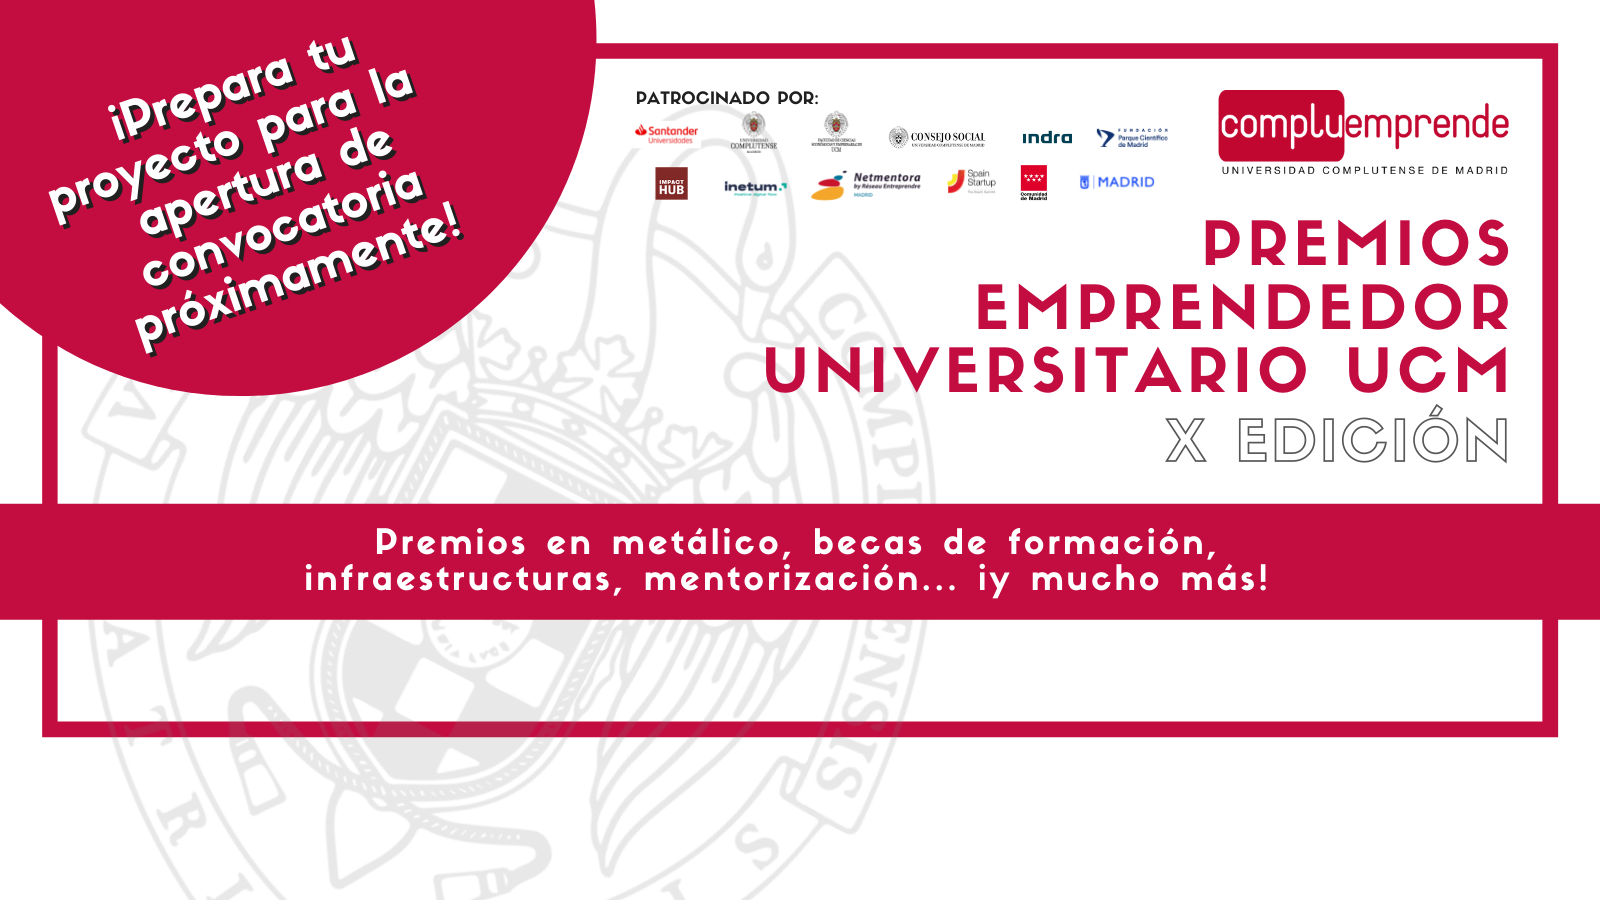 X edición de los Premios Emprendedor Universitario UCM